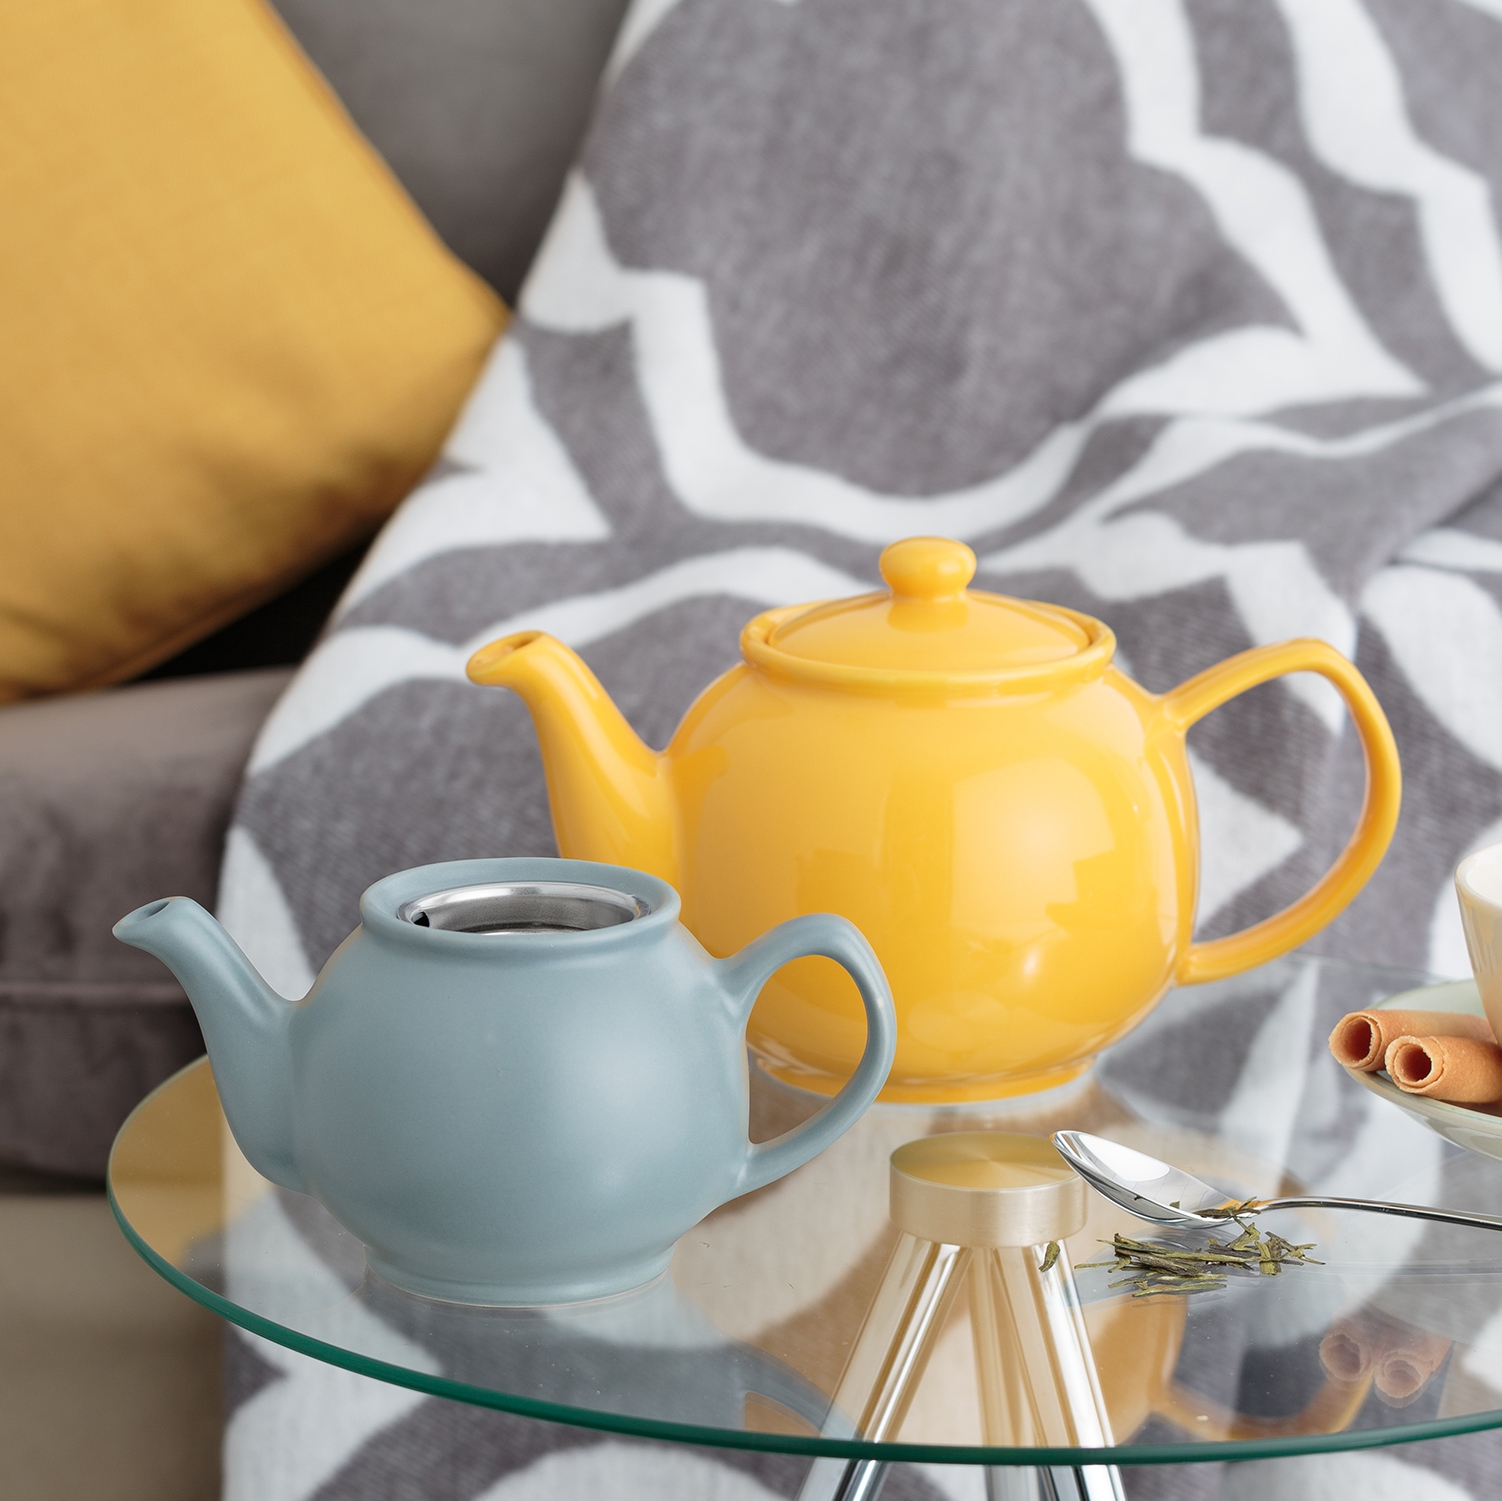 Price & Kensington - Teapot - Yellow